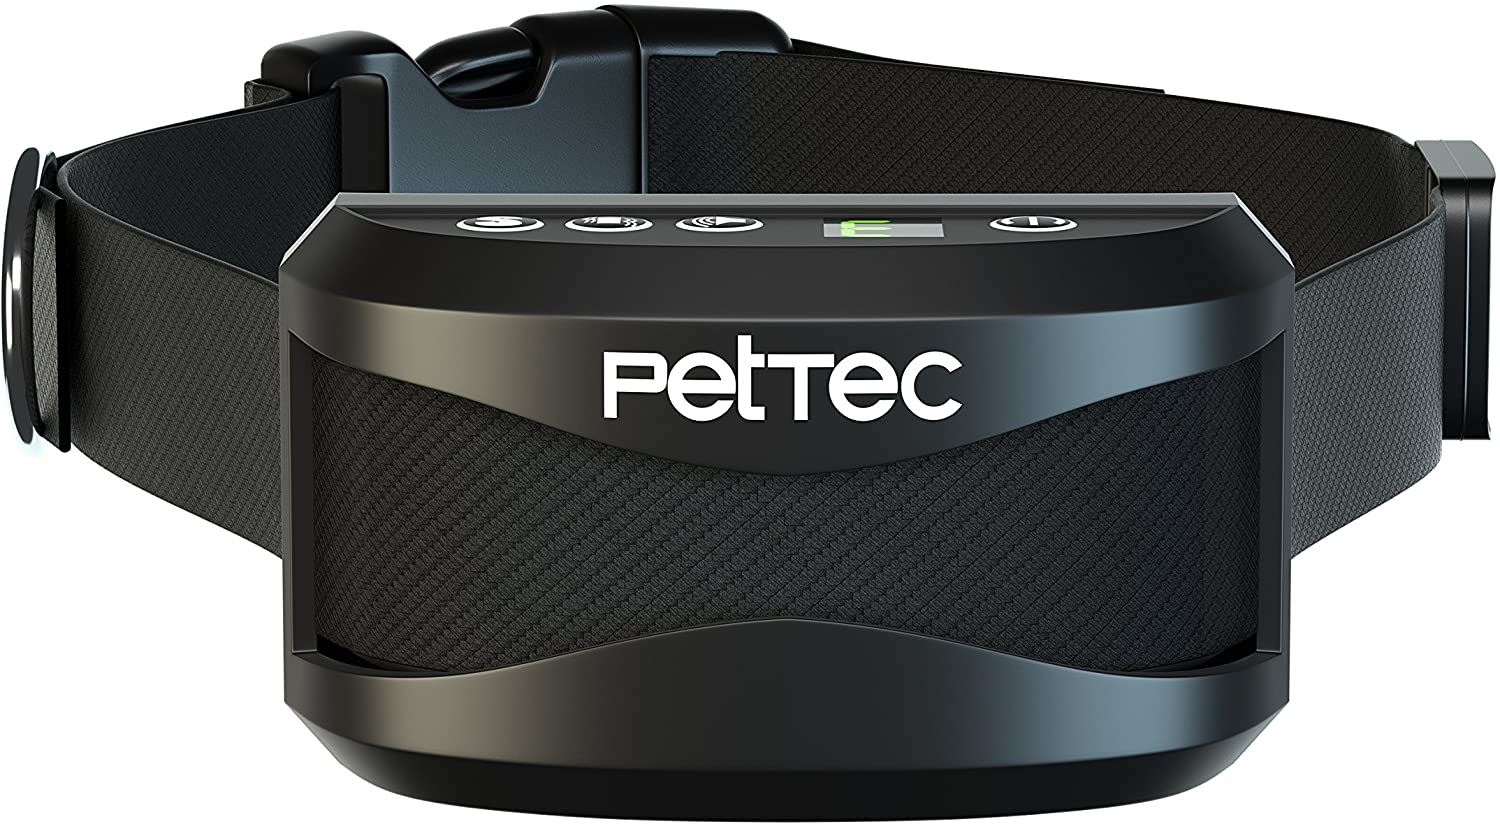  PetTec Collar de Perro con Entrenamiento de Vibración Automática y Sonido para Aprender y Dejar de Ladrar, Pilas Recargable de Larga Duración, Duradero y Resistencia a Cambios Climáticos IP65 